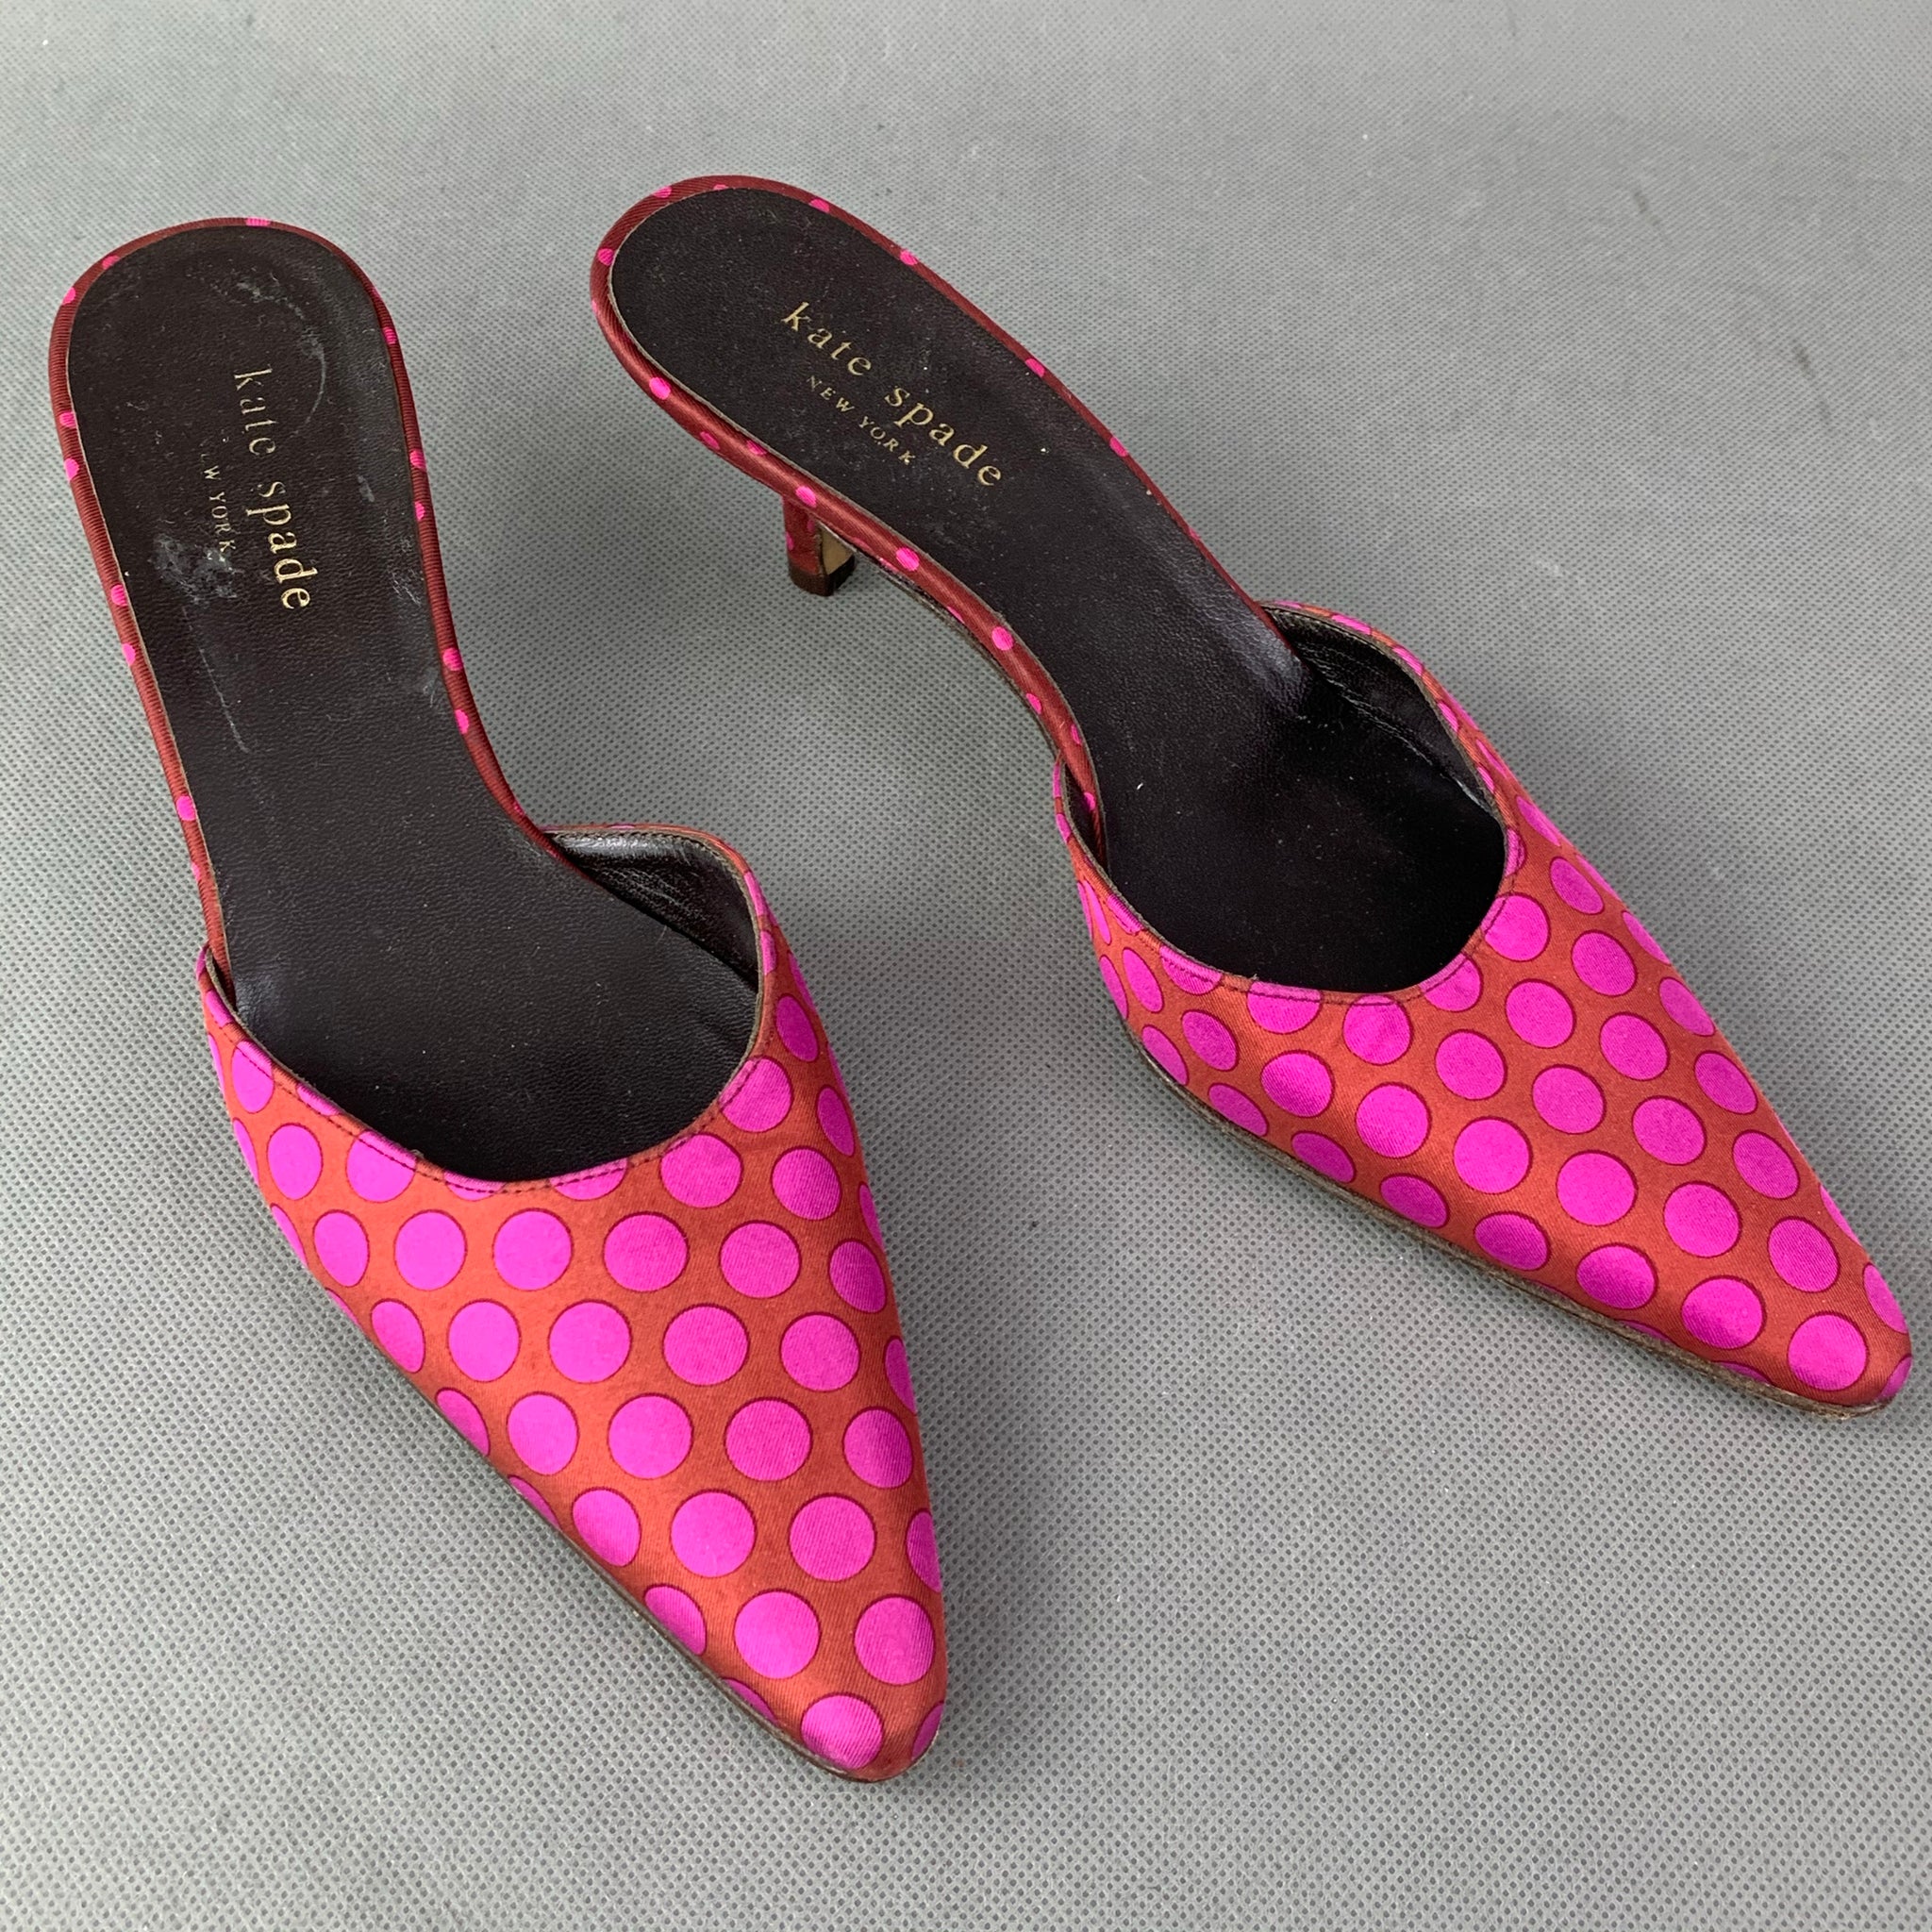 KATE SPADE Polka Dot Kitten Heel Mules / Shoes Size UK 3 - EU 37 - US –  